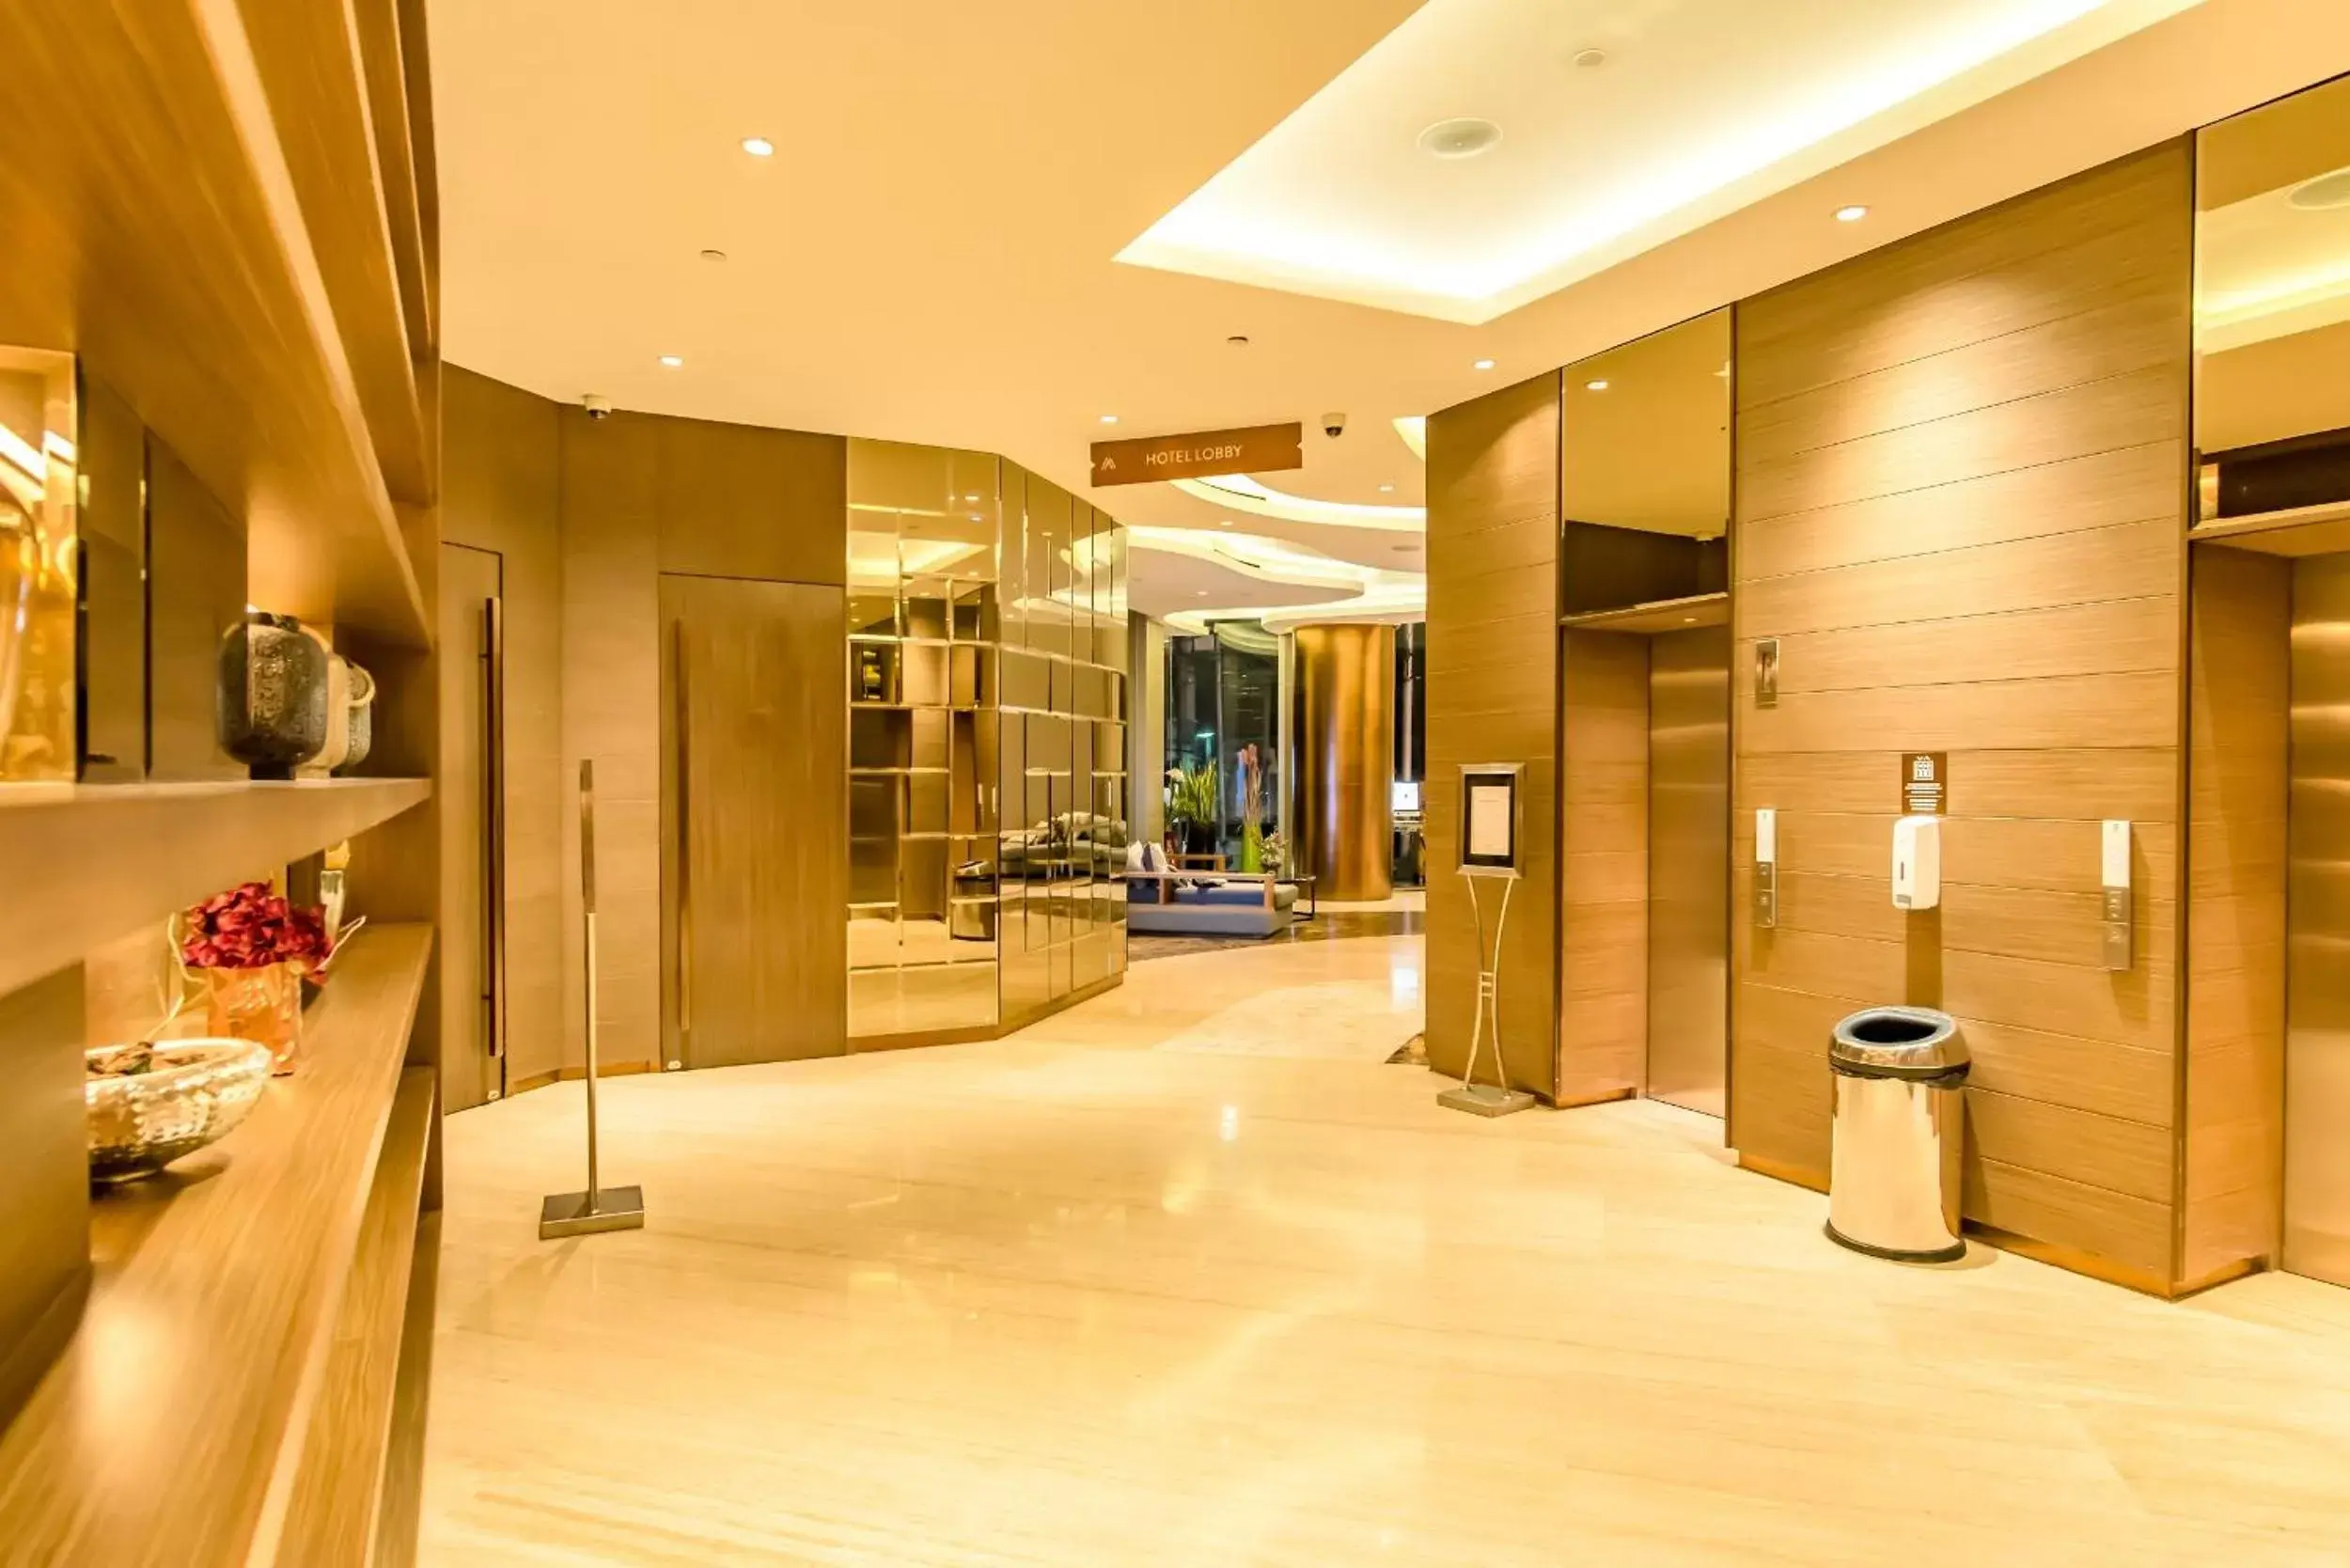 Lobby or reception, Lobby/Reception in Ashley Wahid Hasyim Jakarta